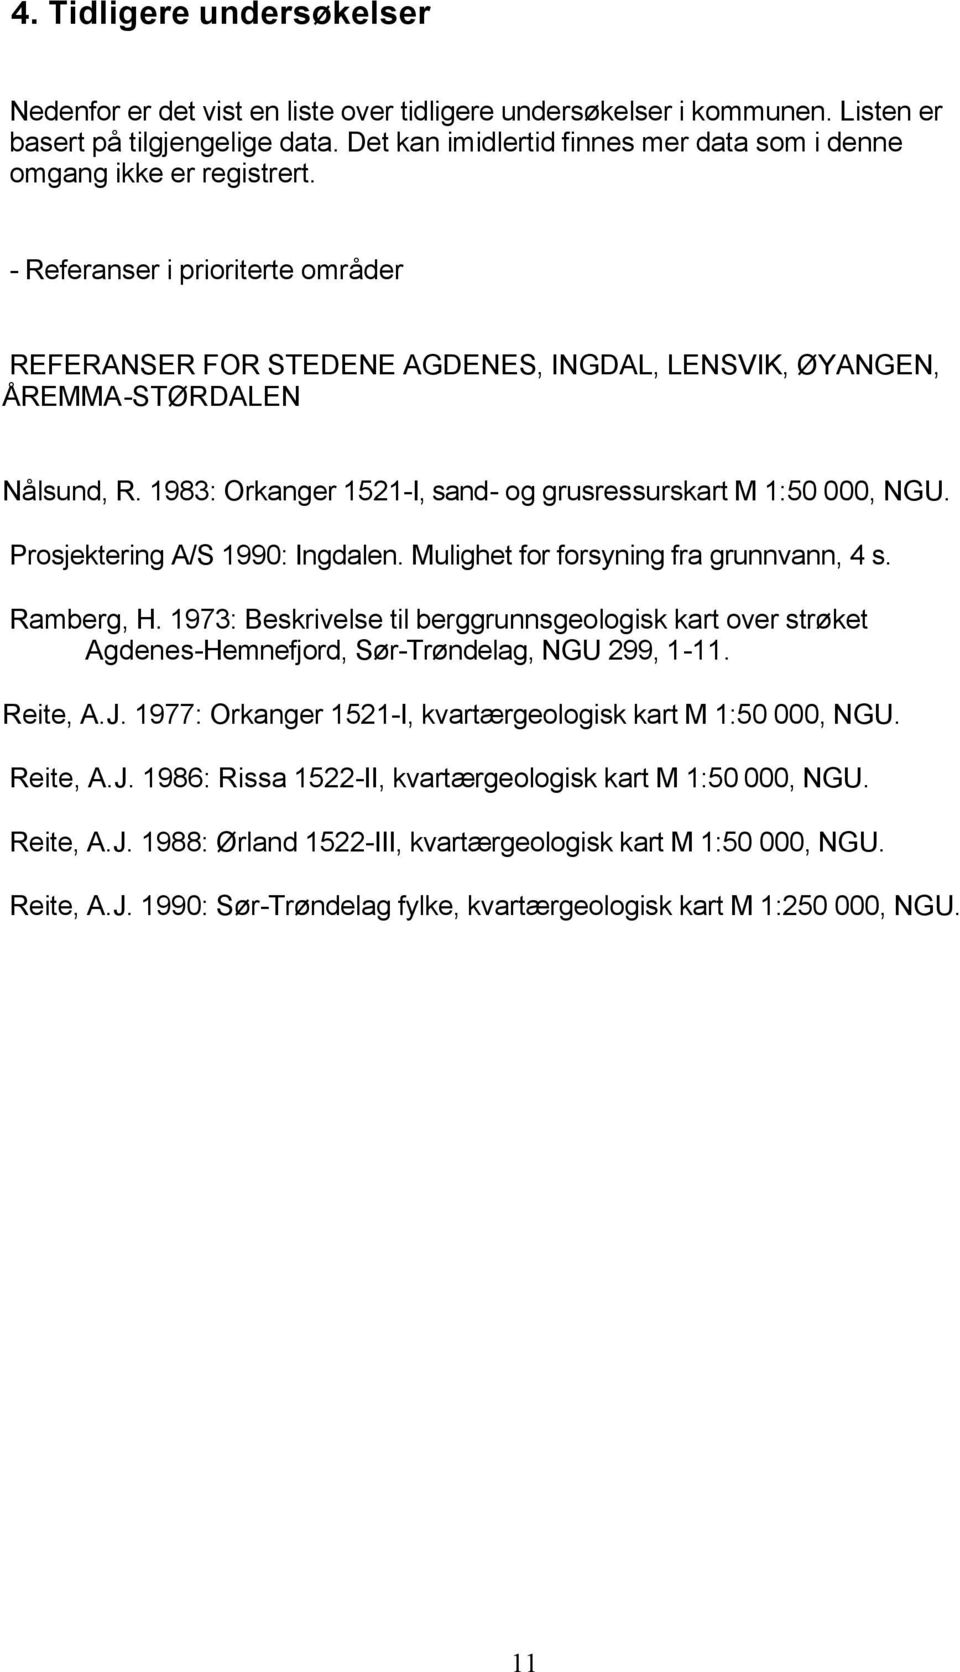 1983: Orkanger 1521-I, sand- og grusressurskart M 1:50 000, NGU. Prosjektering A/S 1990: Ingdalen. Mulighet for forsyning fra grunnvann, 4 s. Ramberg, H.